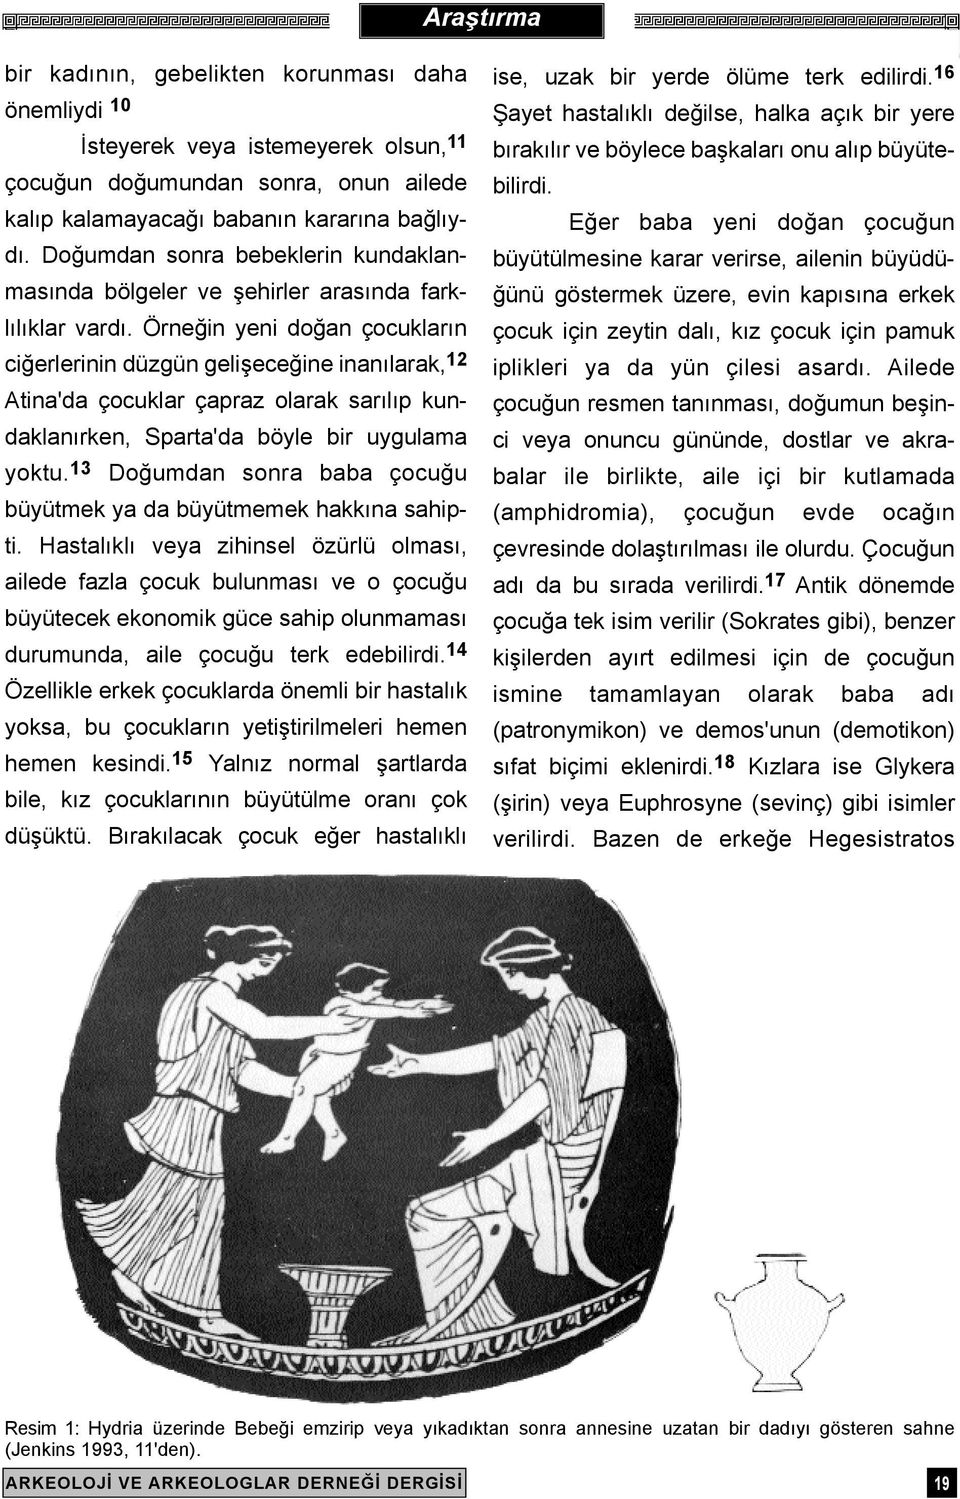 Örneðin yeni doðan çocuklarýn ciðerlerinin düzgün geliþeceðine inanýlarak, 12 Atina'da çocuklar çapraz olarak sarýlýp kundaklanýrken, Sparta'da böyle bir uygulama yoktu.